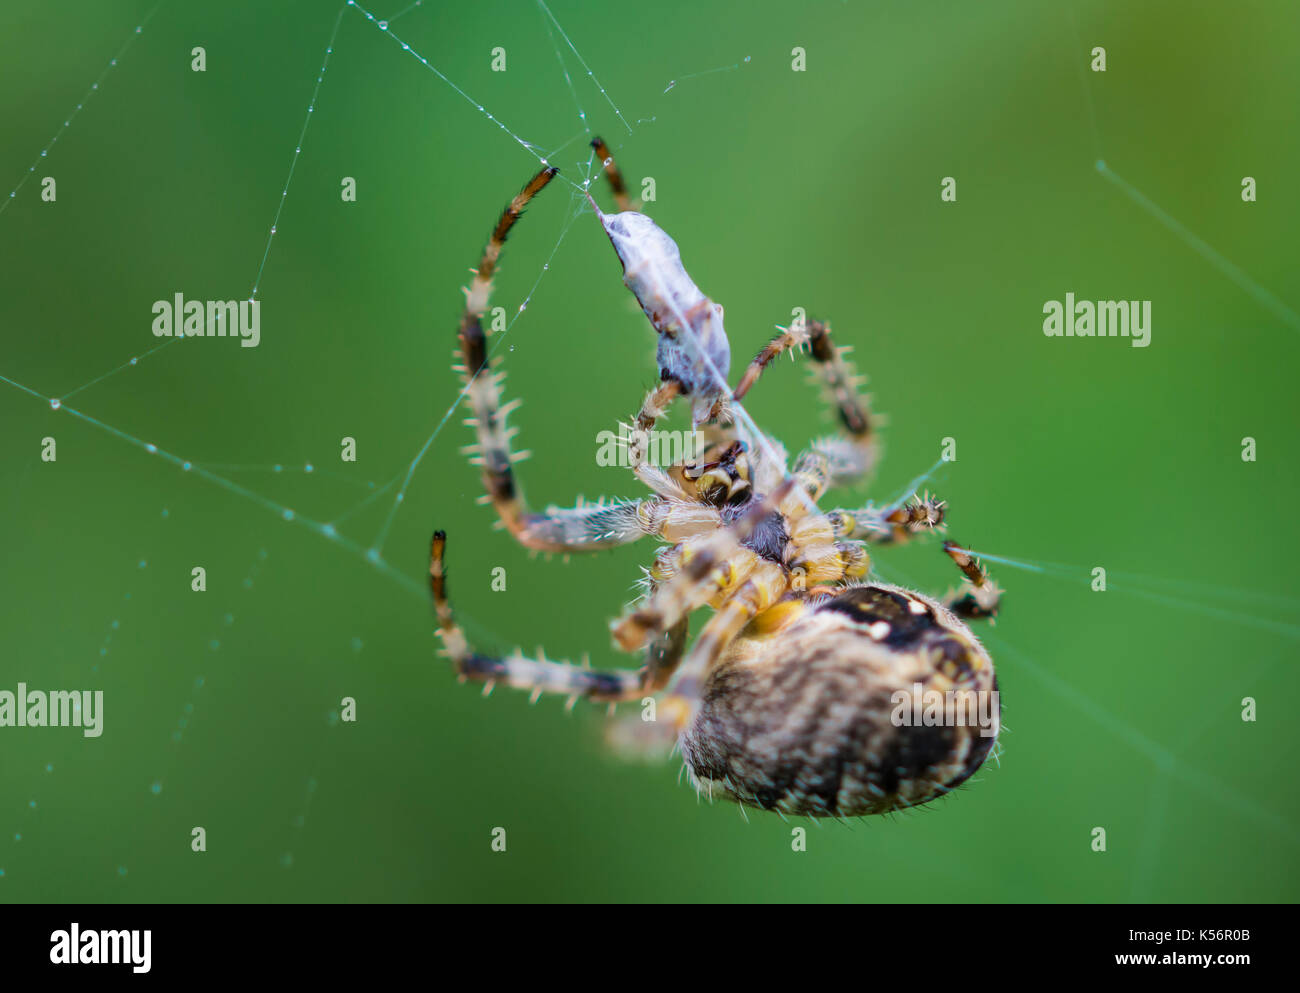 Araneus Diadematus (Giardino europeo Spider, diadema Spider, Cross Spider), un Orb Weaver spider preda di mangiare in un bozzolo su una spider web nel Regno Unito. Foto Stock